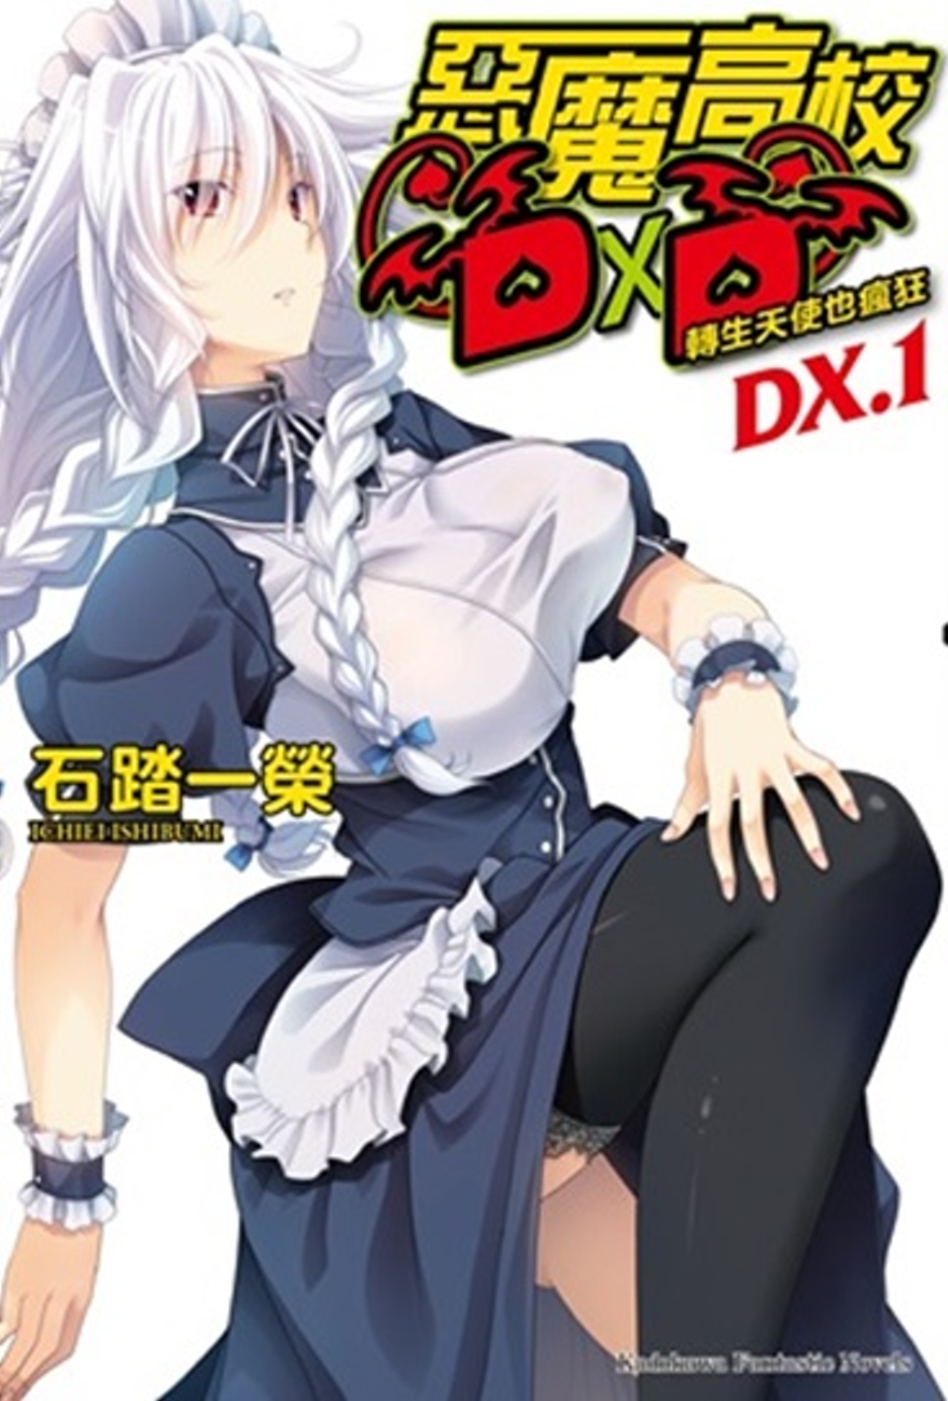 惡魔高校DXD (DX.1) 轉生天使也瘋狂